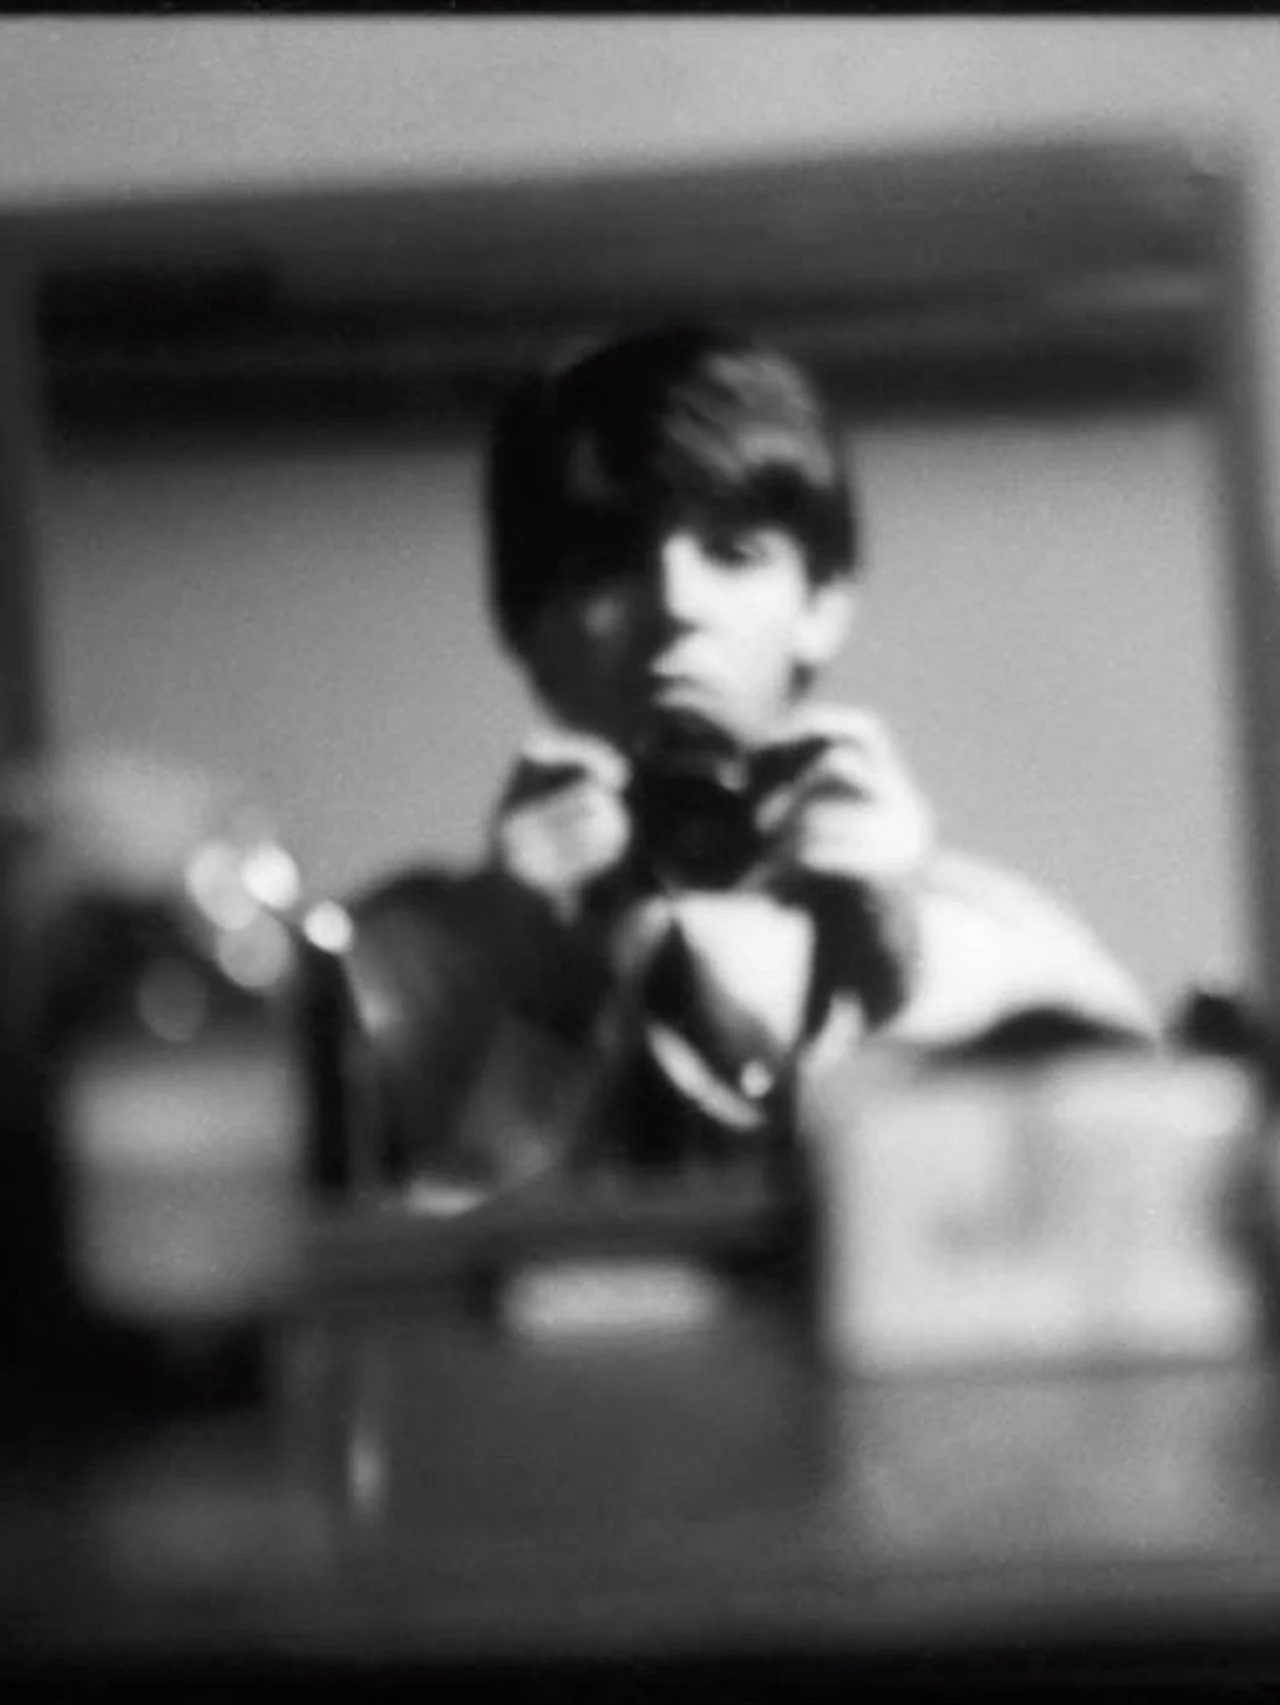 “嵐の目”にいた【ポール・マッカートニー】が自ら撮影。「ポール・マッカートニー写真展 1963-64〜Eyes of the Storm〜」、待望の日本展がスタート